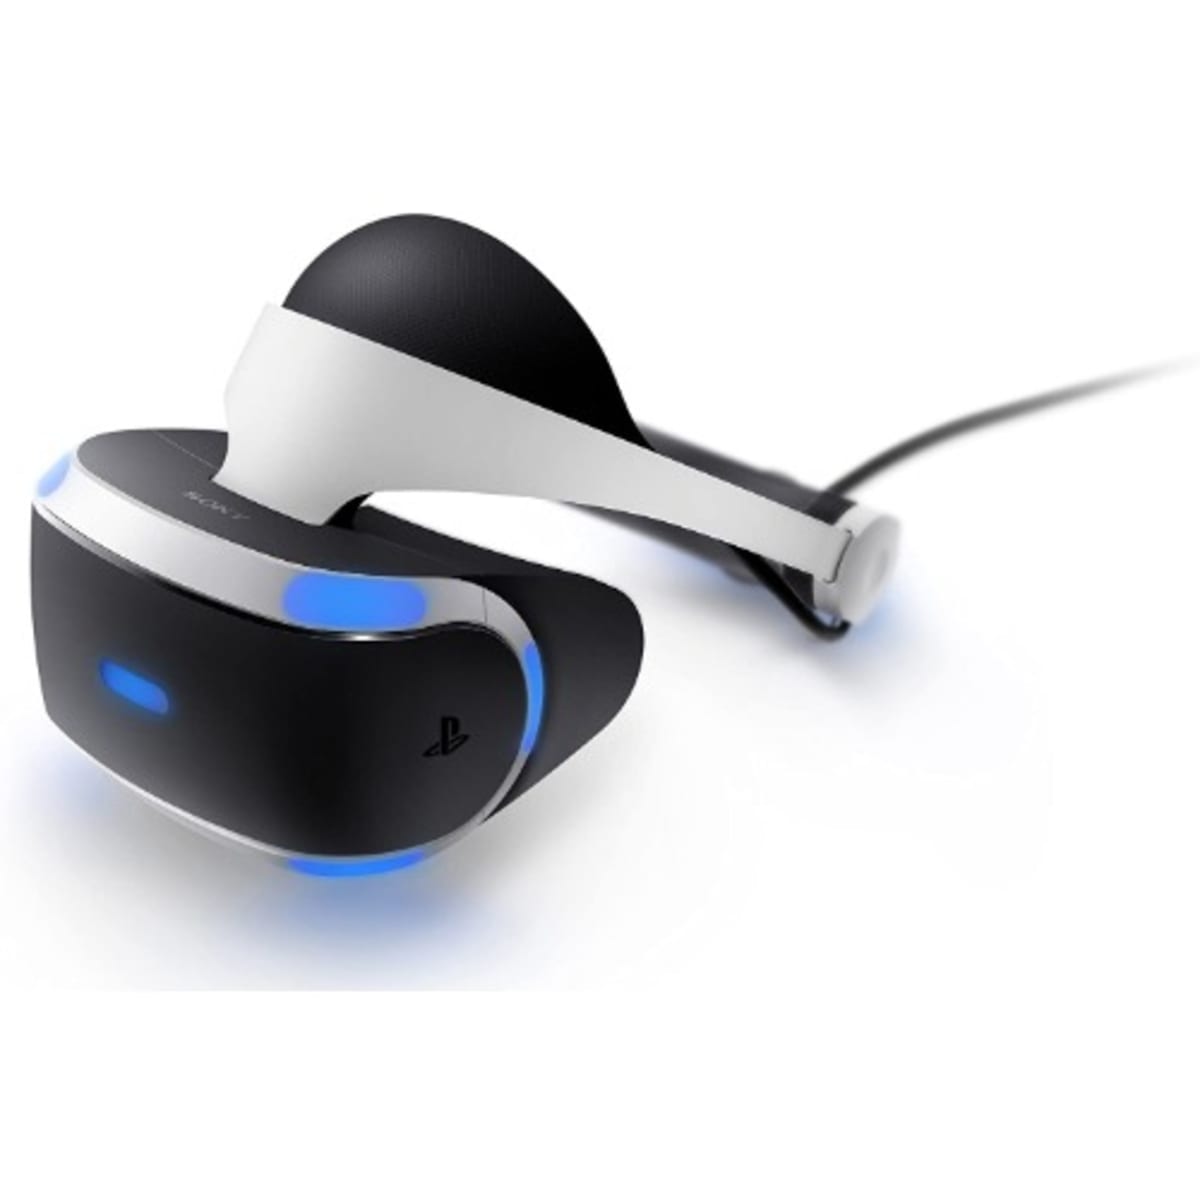 PlayStation VR Mega Pack (PS4)